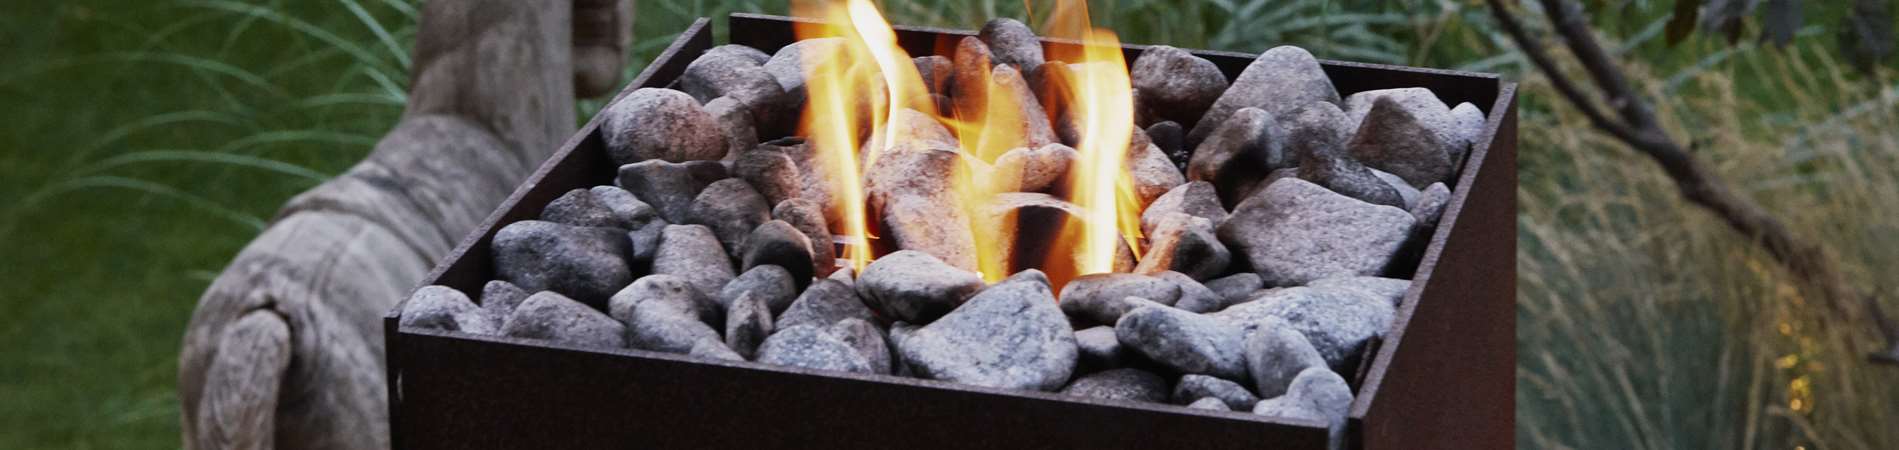 Olymp Fireplace gasbål søjle i cortenstaal.jpg